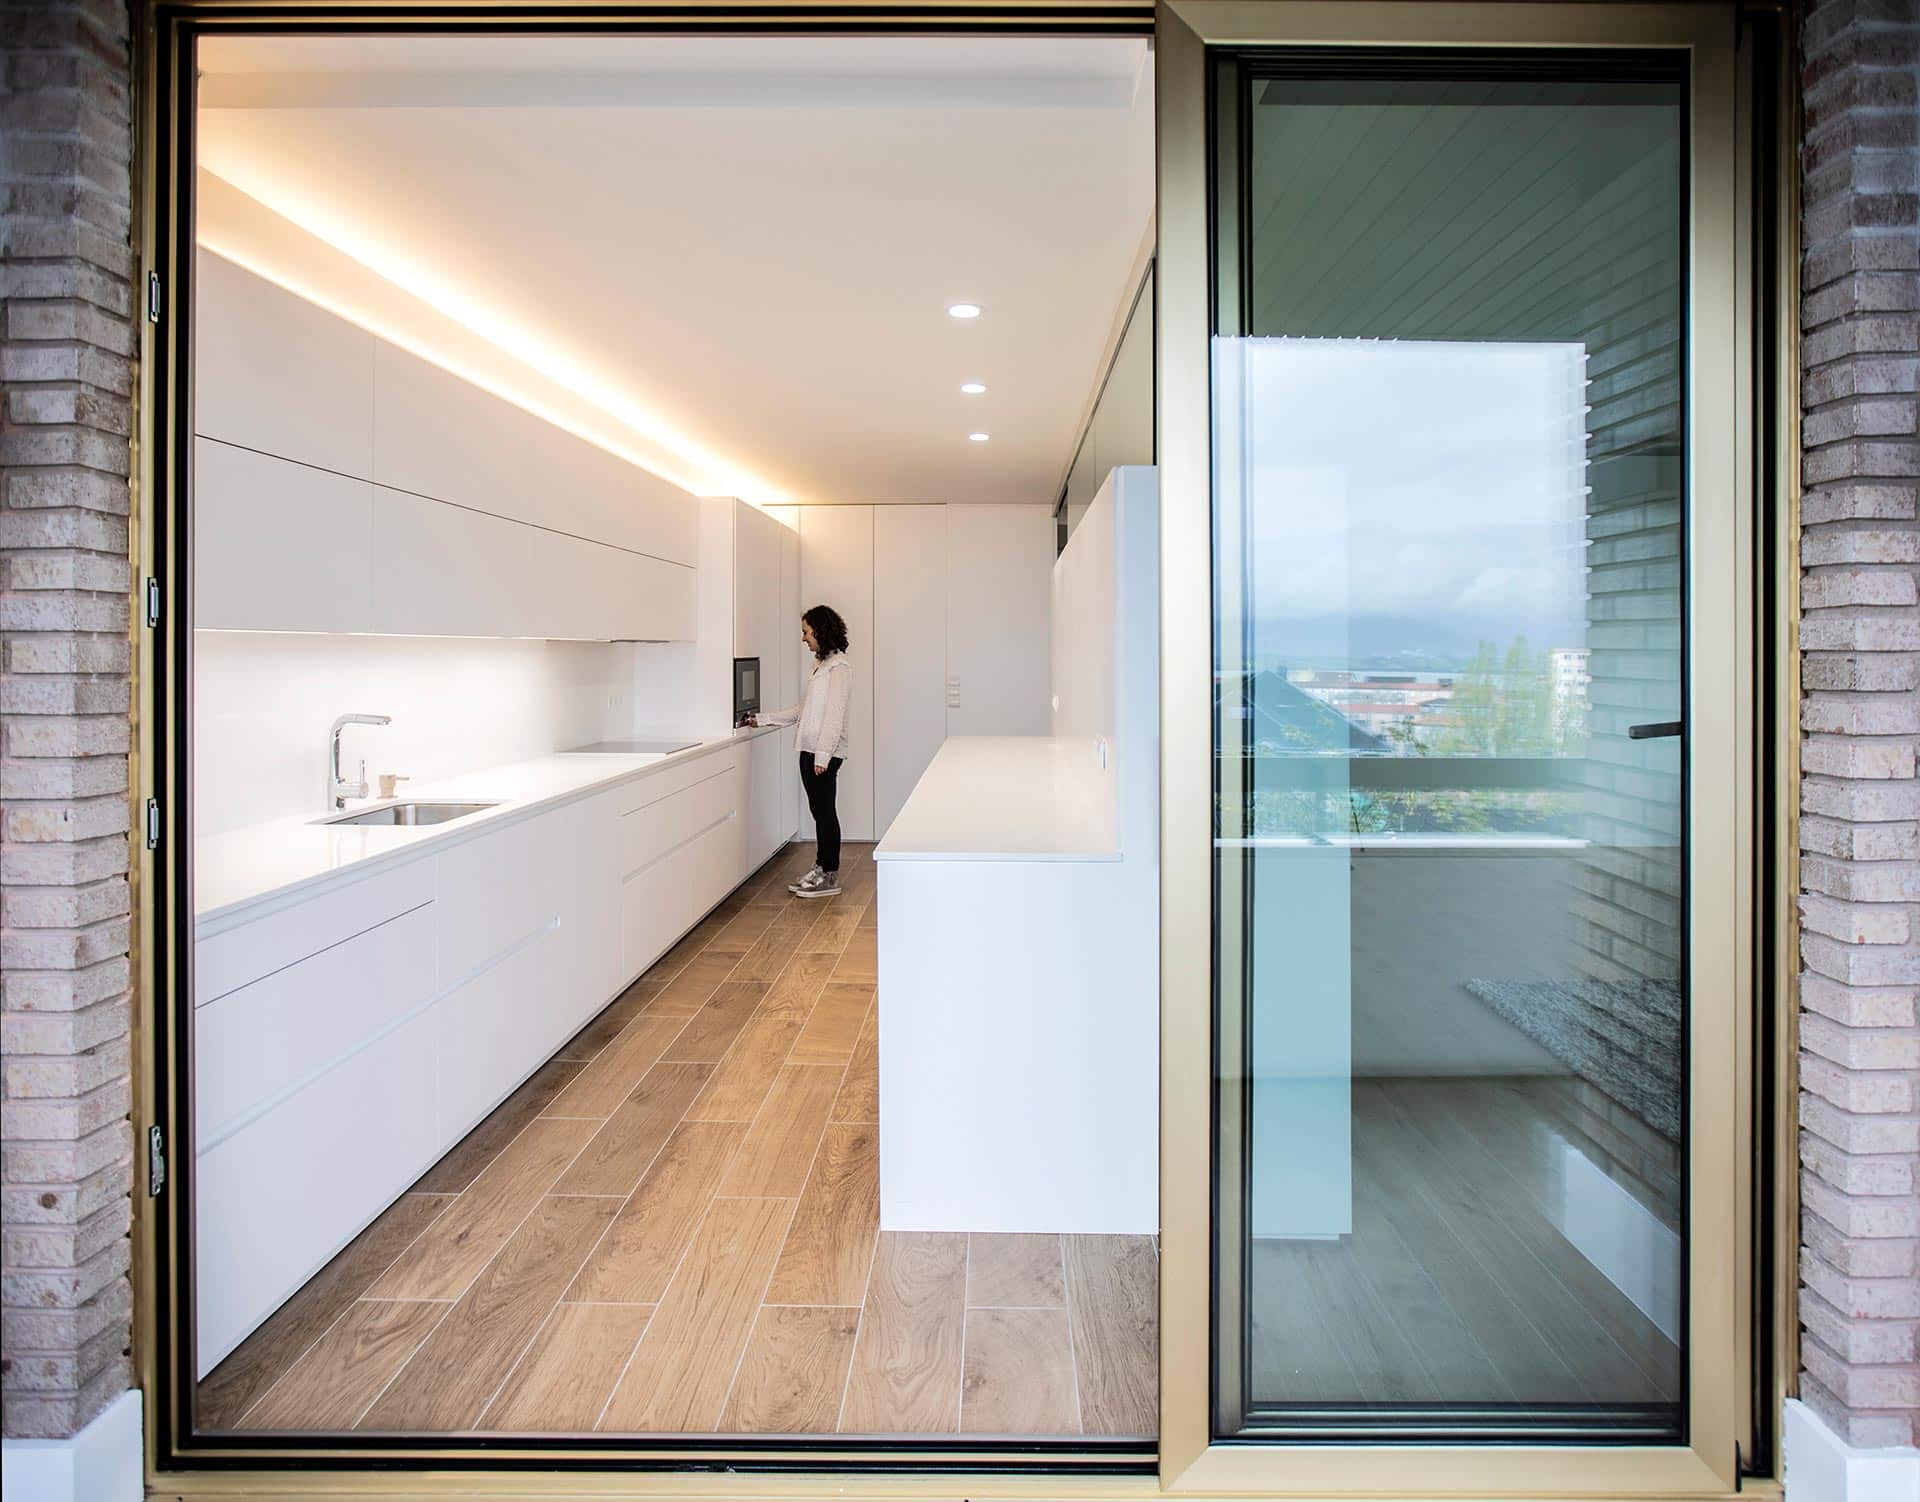 Cocina minimalista en vivienda diseñada por Moah Arquitectos en Santander